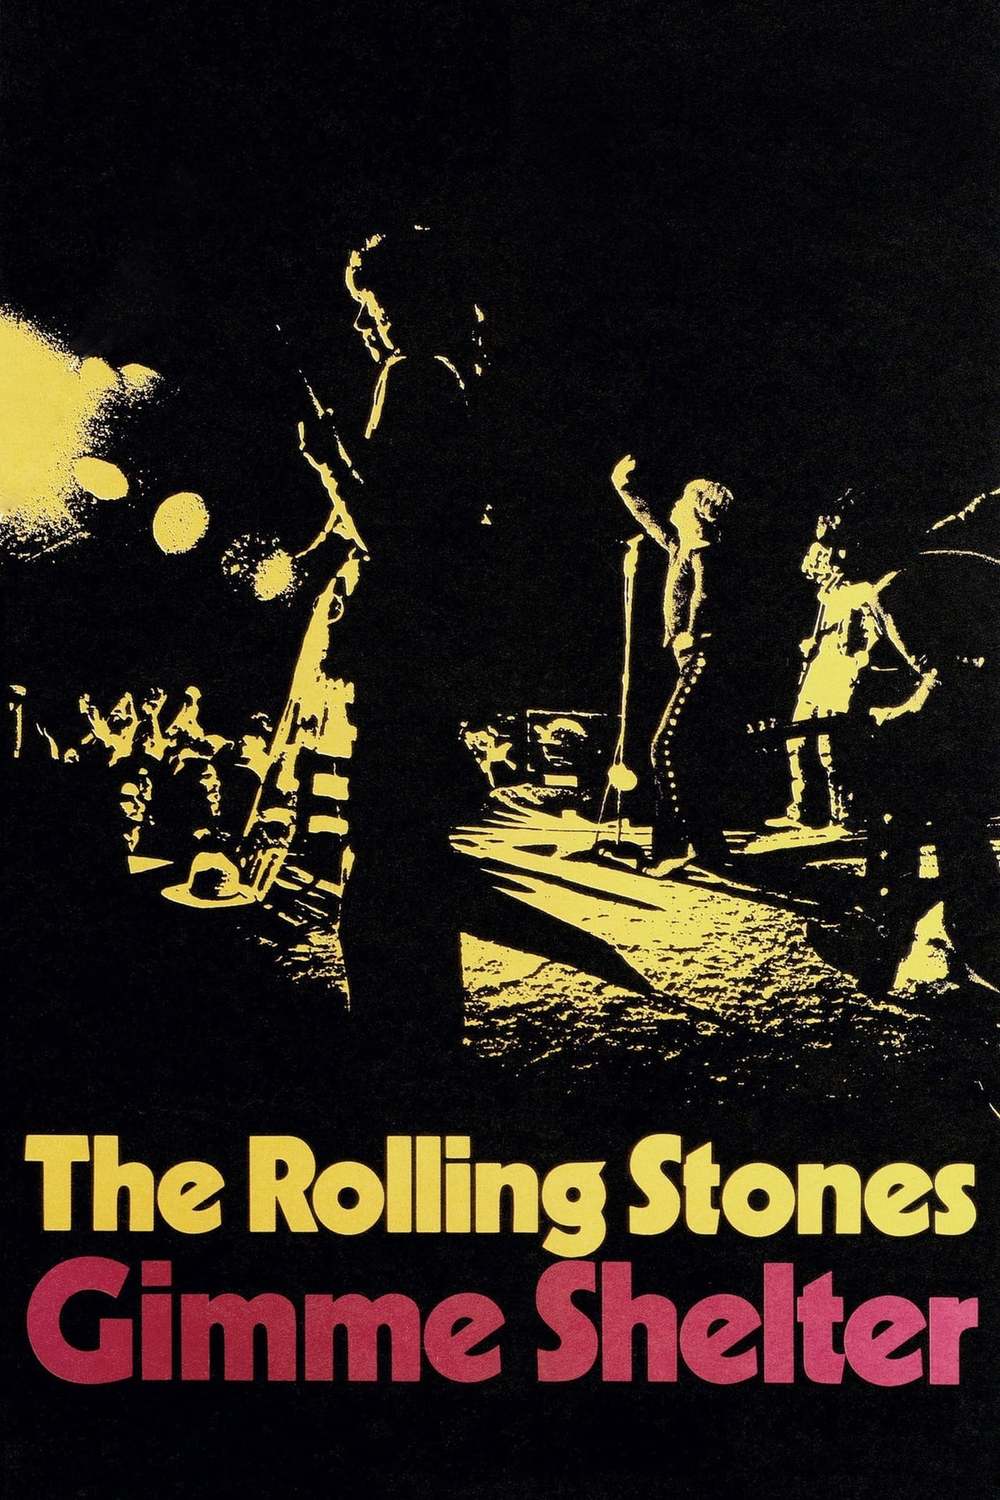 Stones gimme shelter. Gimme Shelter. Gimme Shelter 1970. Rolling Stones "Gimme Shelter". U3 Gimme Shelter see Concert.